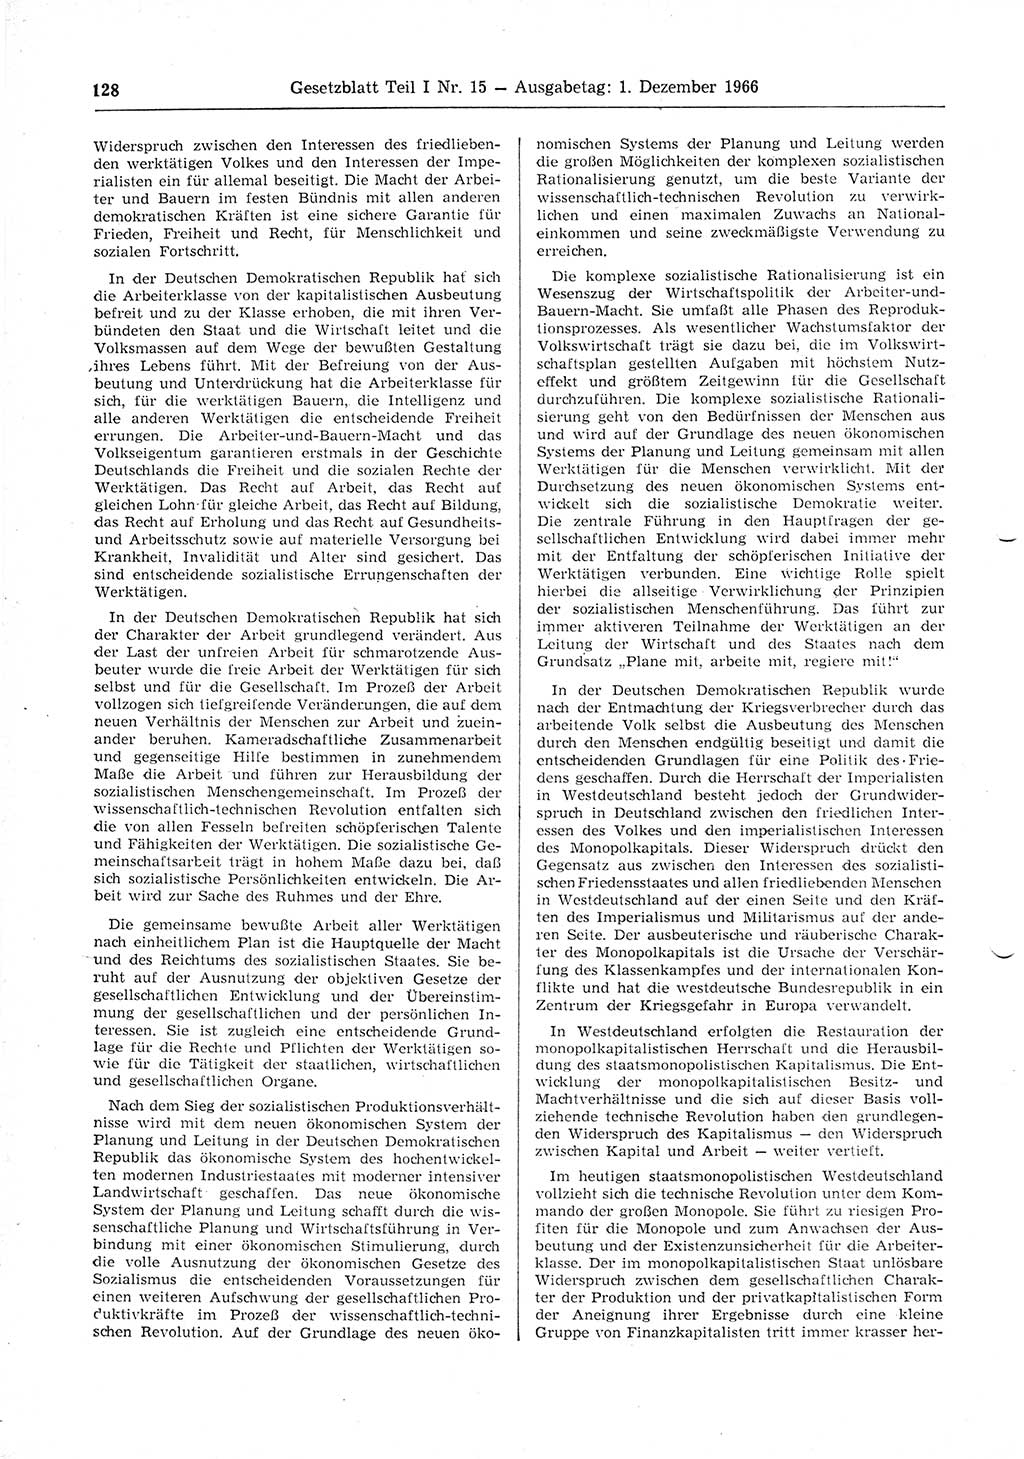 Gesetzblatt (GBl.) der Deutschen Demokratischen Republik (DDR) Teil Ⅰ 1966, Seite 128 (GBl. DDR Ⅰ 1966, S. 128)